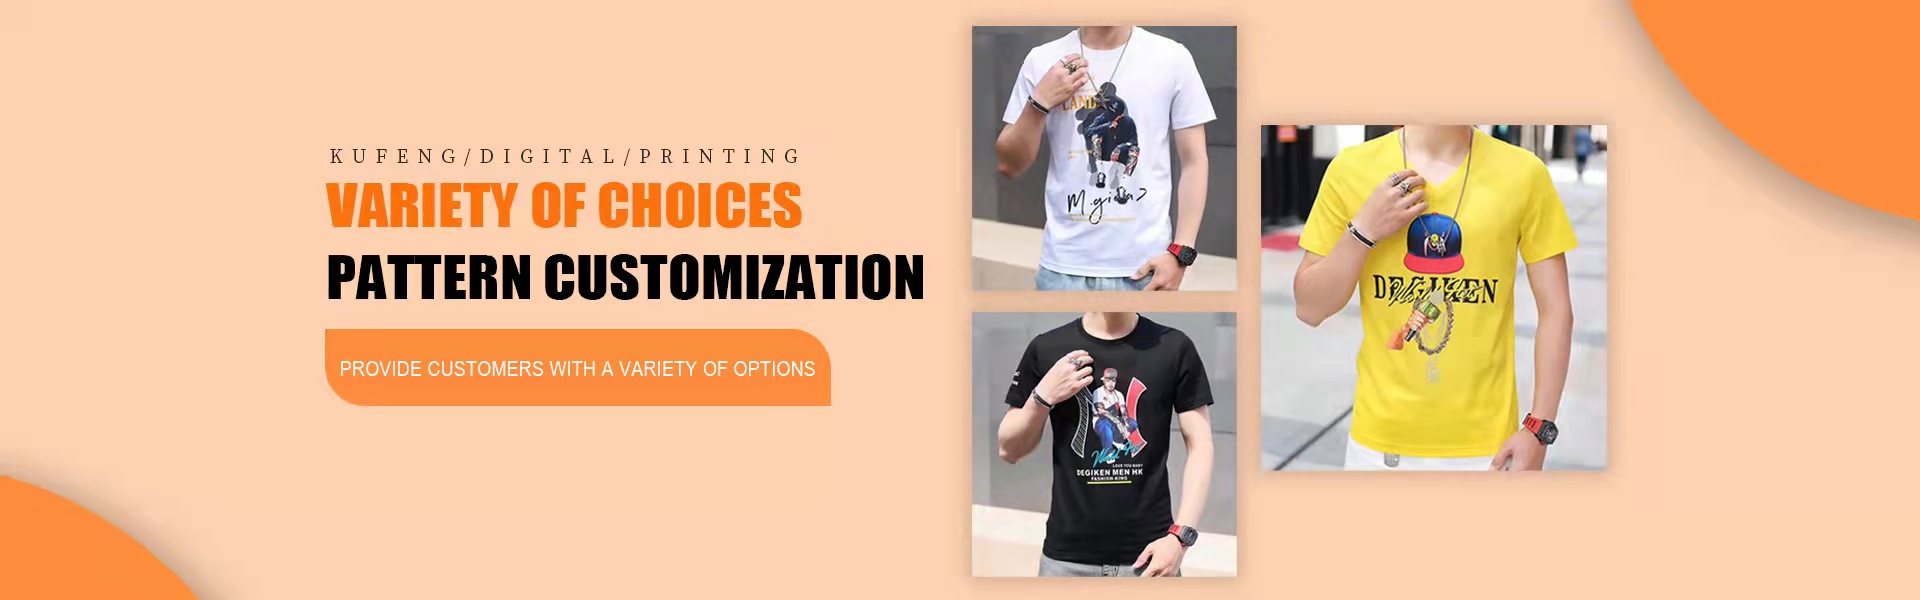 индивидуальная настройка, обработка входящих образцов, цифровая печать,Kufeng digital clothing